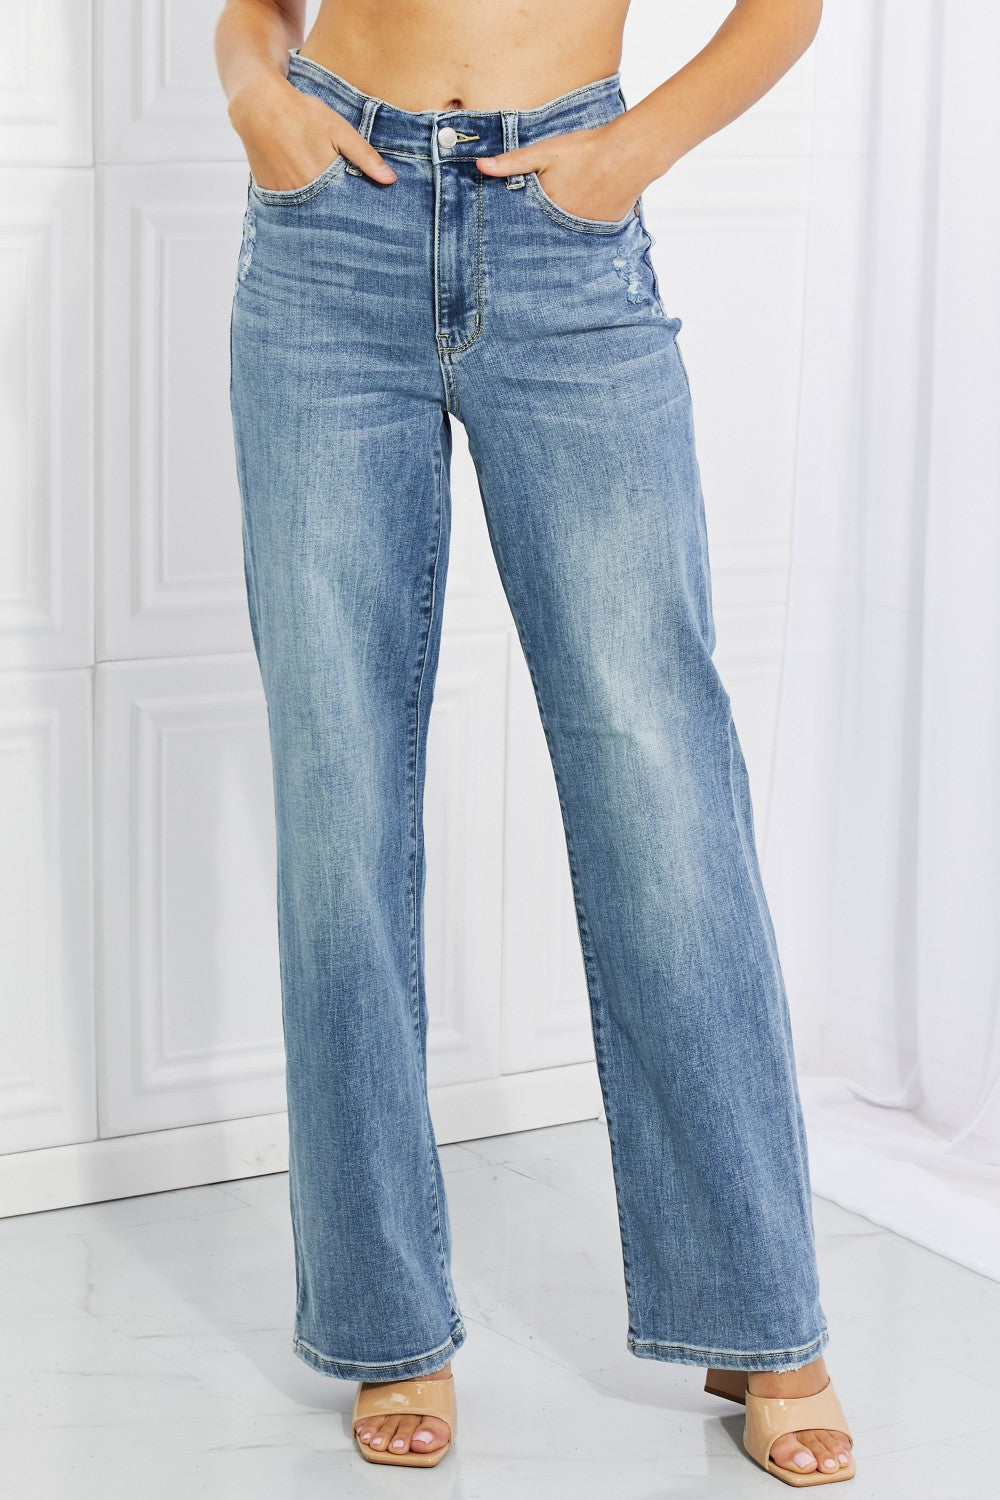 Judy Blue Full Size Rachel  Jeans Style 82407